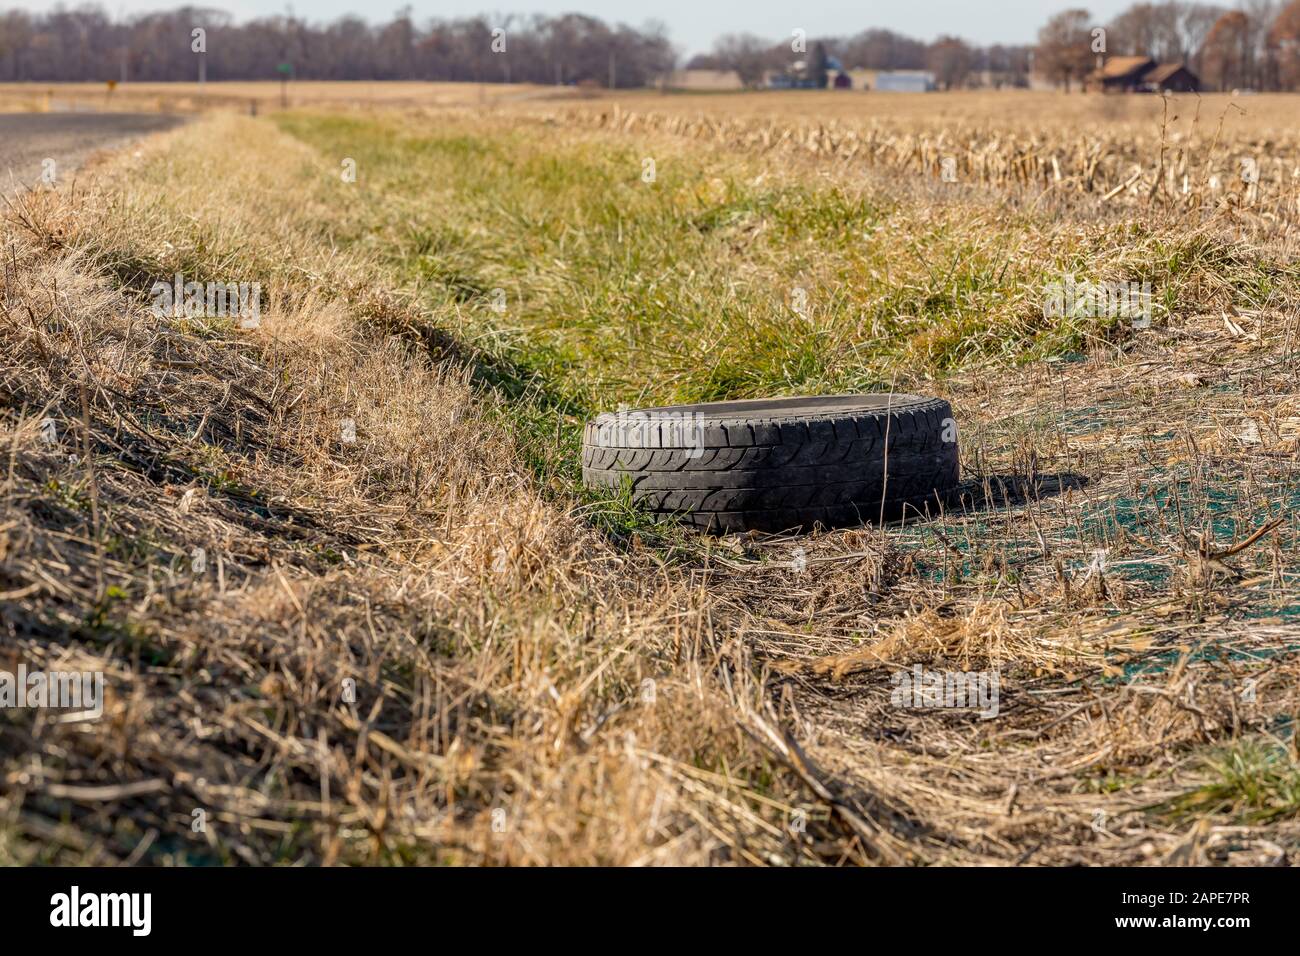 Alter schwarzer Gummireifen, der im Graben entlang der Landstraße abgeworfen wurde. Umweltverschmutzung, Umweltschäden und Recycling Stockfoto